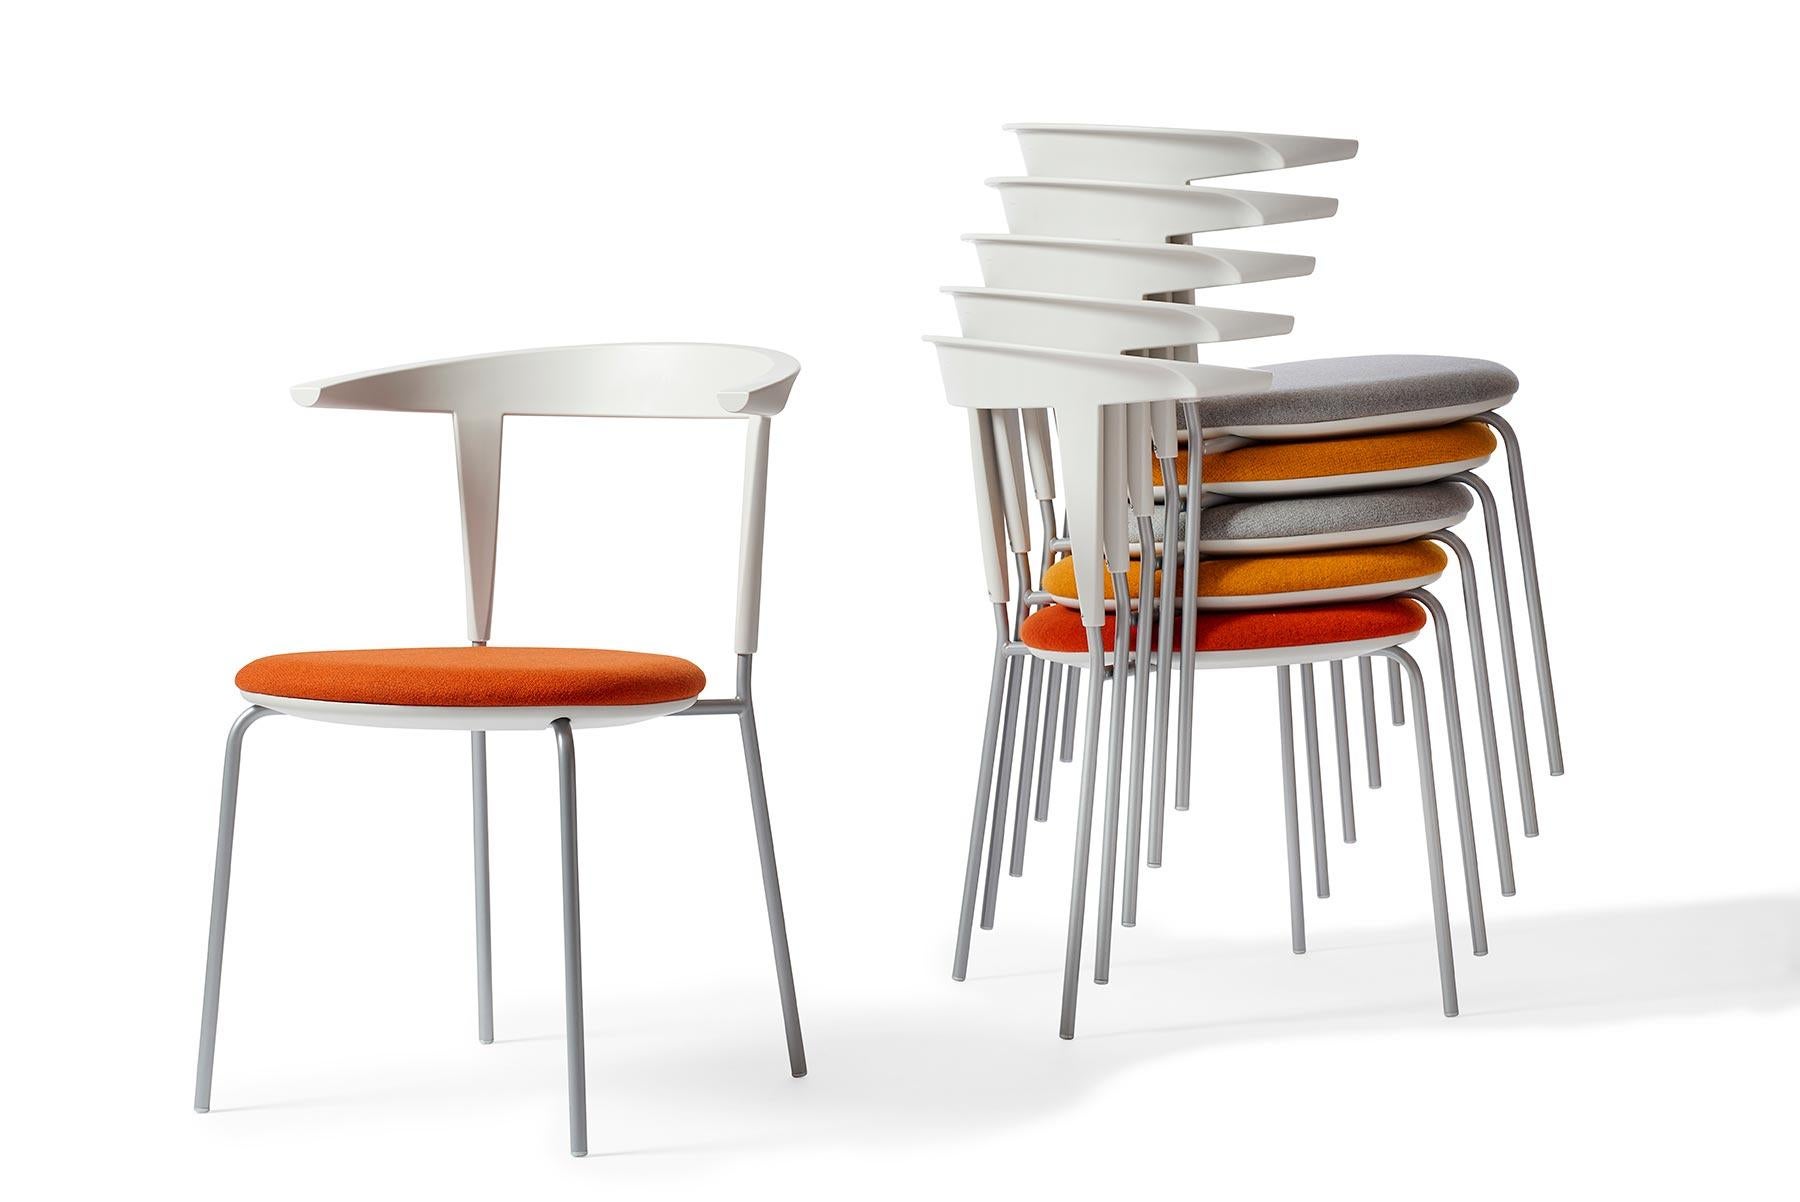 Dieses innovative Design, das 2015 von O + M Design entworfen wurde, besteht aus einem Stahlrahmen mit adaptivem Kunststoffträger. Eine geschwungene Rückenlehne und ein gepolsterter Sitz bieten Komfort. Stapelbar. Der Stuhl wird in der GETAMA-Fabrik